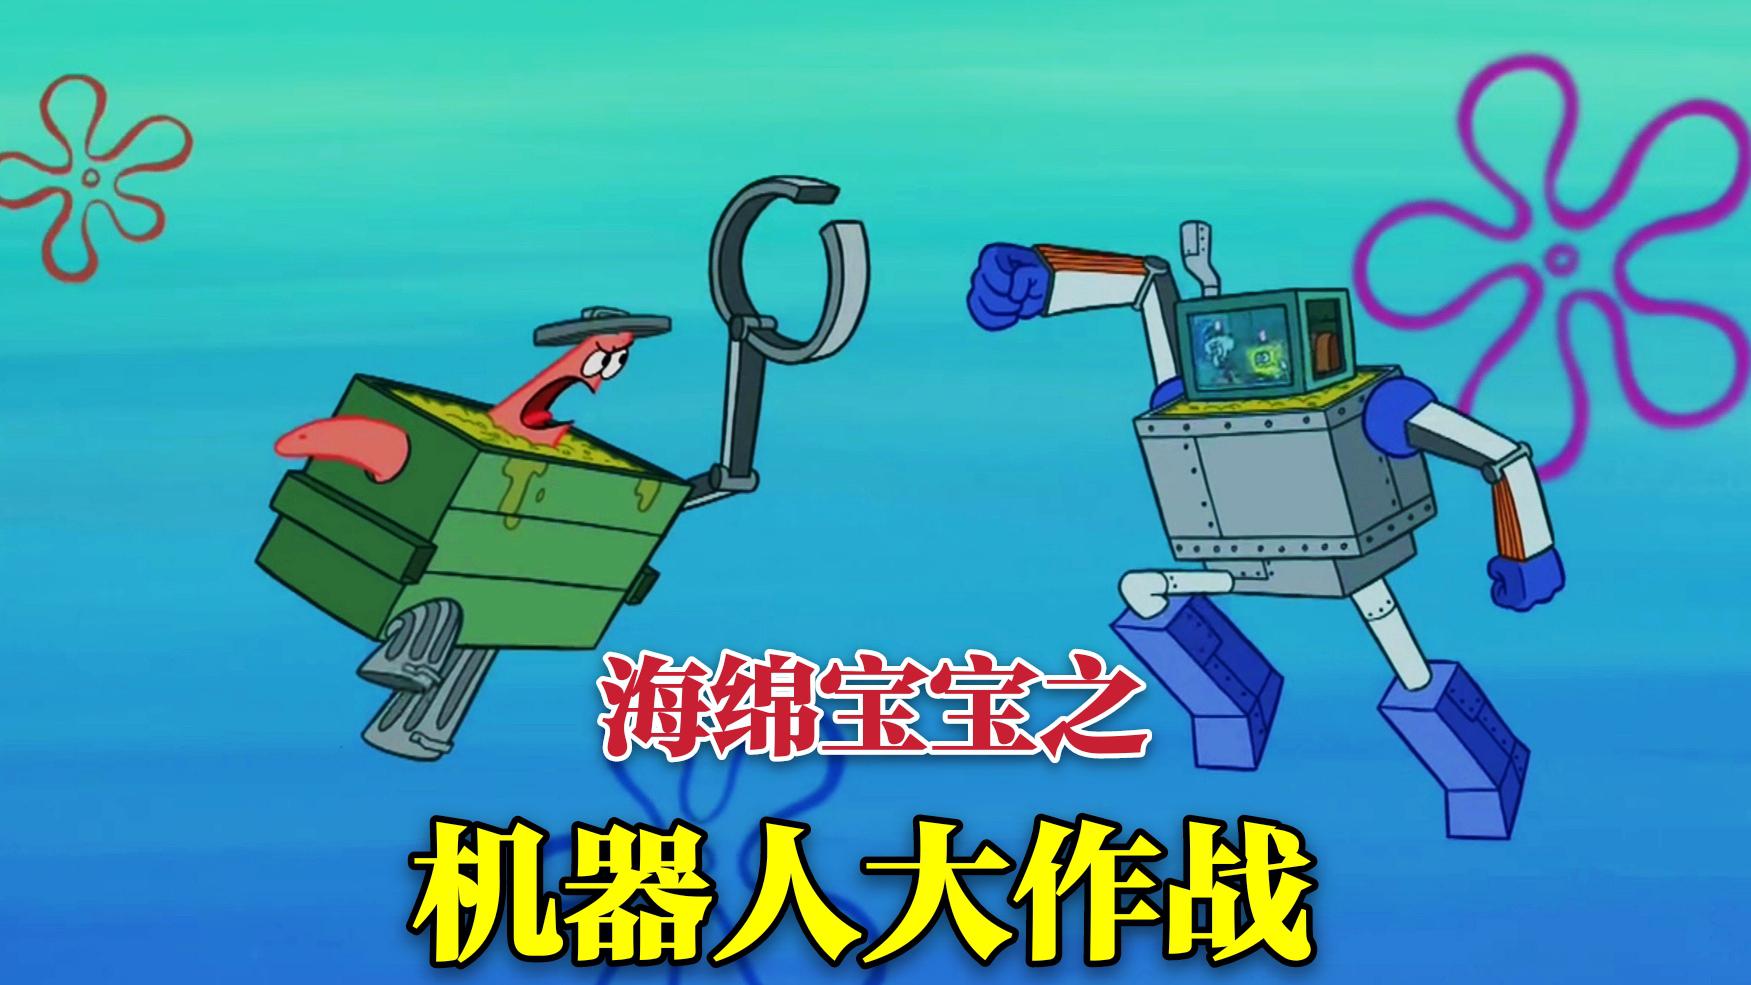 《海绵宝宝》居然将垃圾车变成变形金刚，与派大星展开机器人大战